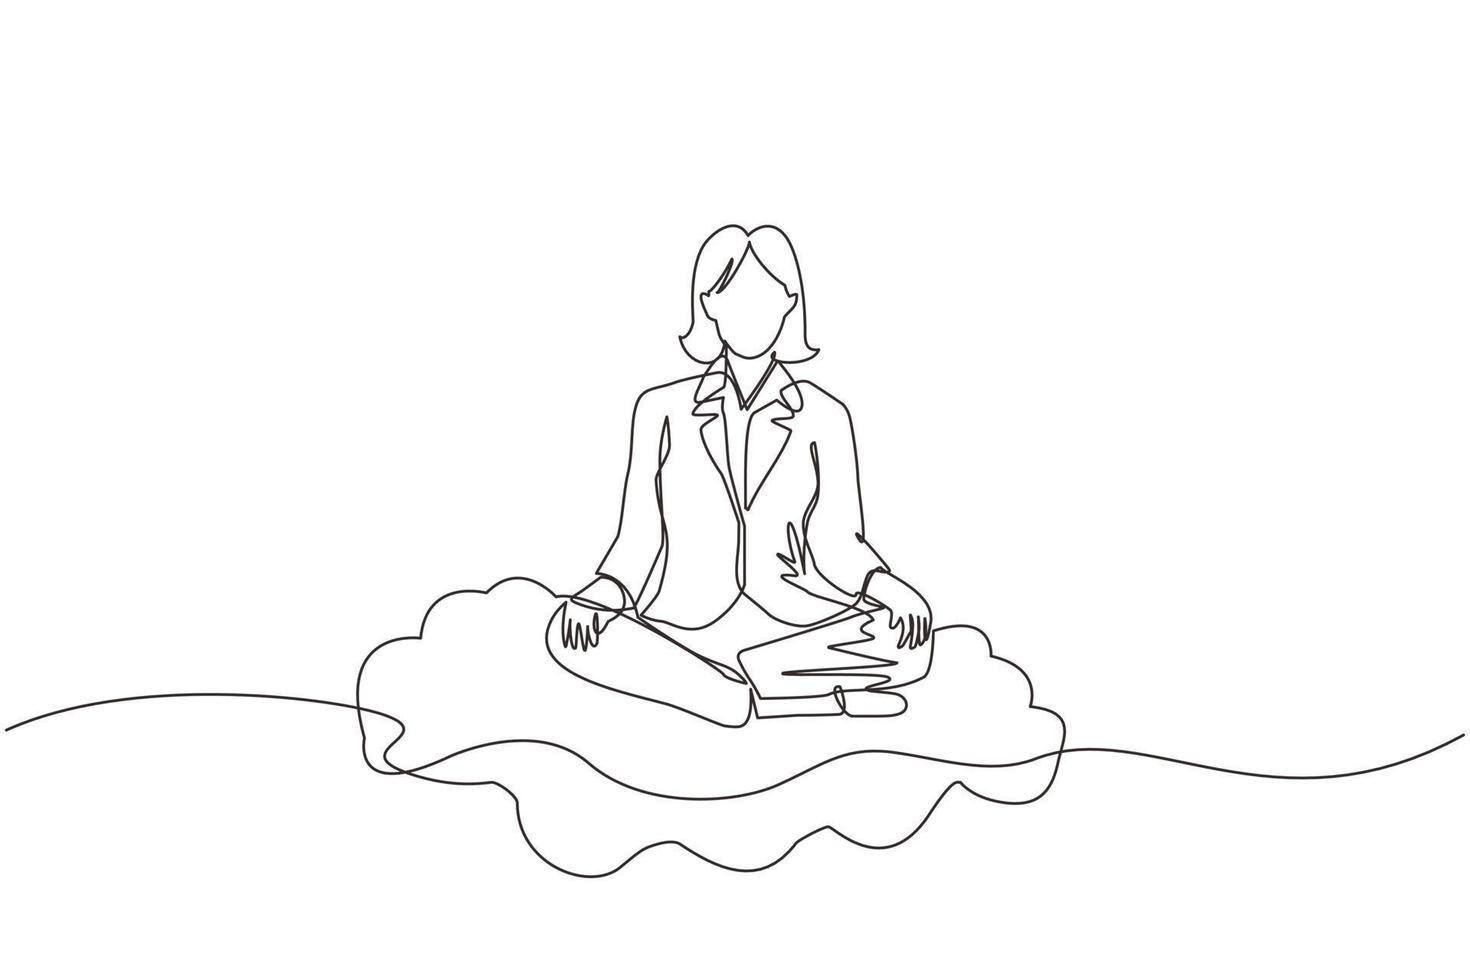 kontinuierliche einzeilige zeichnung büroangestellte oder geschäftsfrau entspannt sich, meditiert in lotusposition auf wolken. fröhliche frau, die sich mit yoga oder meditationshaltung entspannt. einzeiliges zeichnen design vektorgrafik vektor